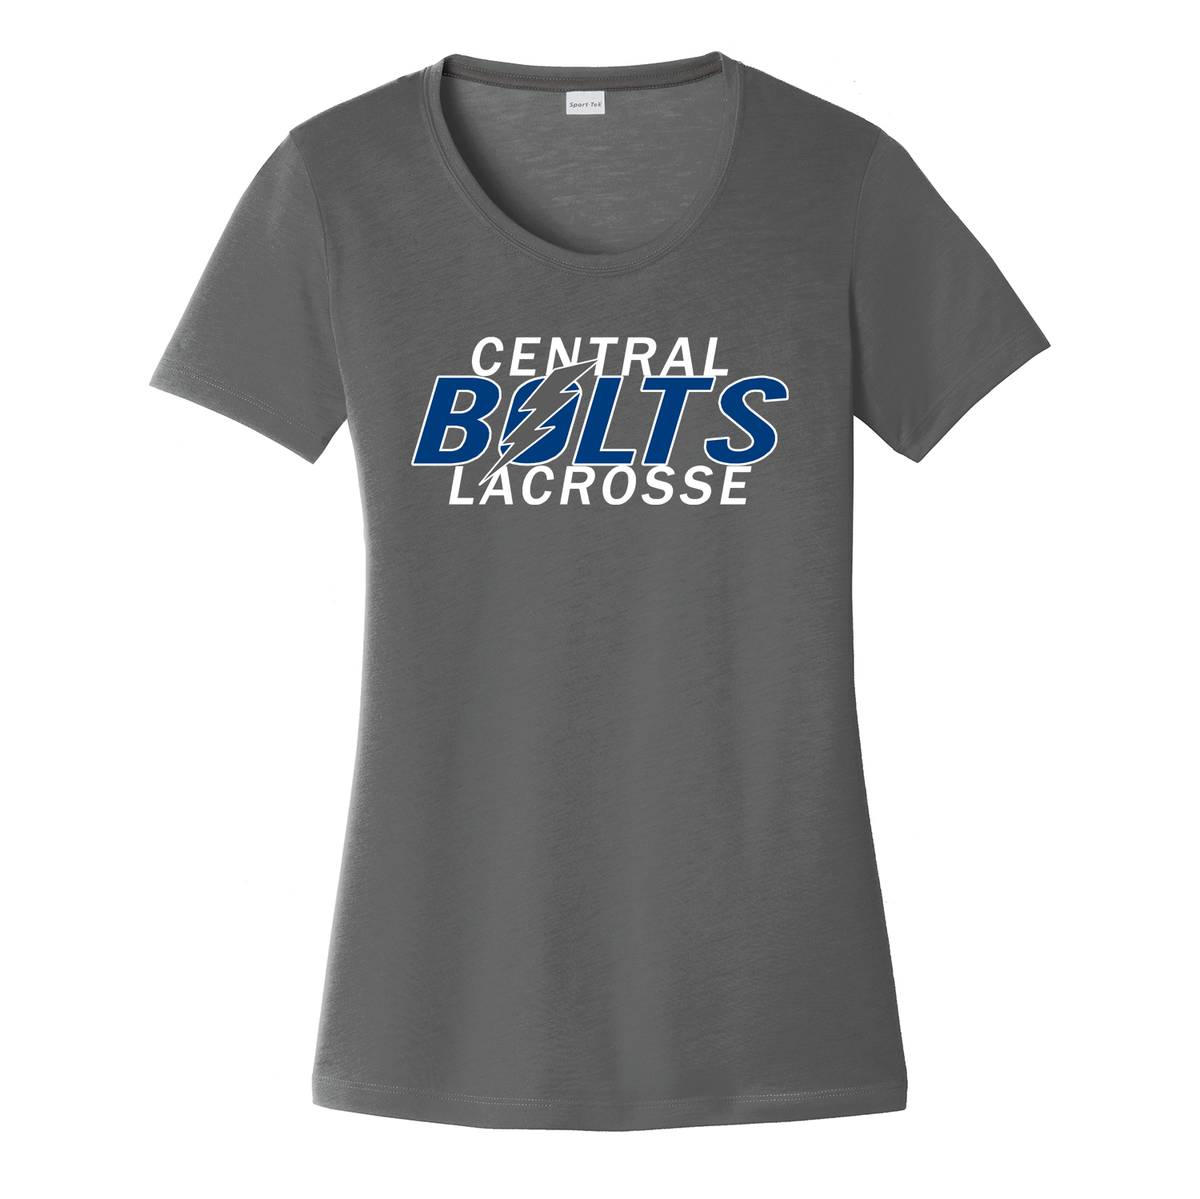 Central Colorado Bolts Lacrosse Women's CottonTouch Performance T-Shirt